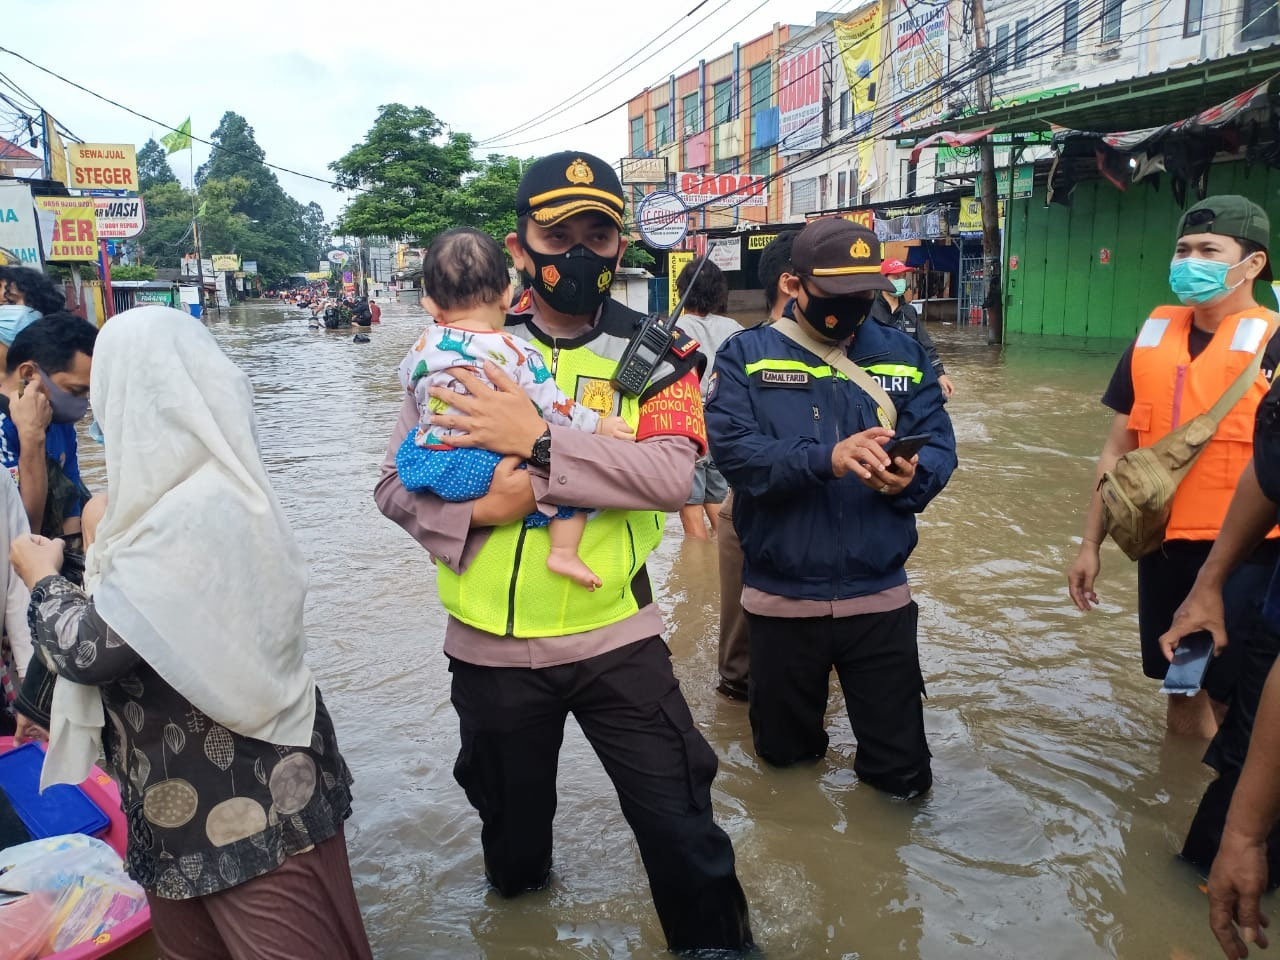 Personel TNI-Polri Dikerahkan Untuk Membantu Korban Banjir